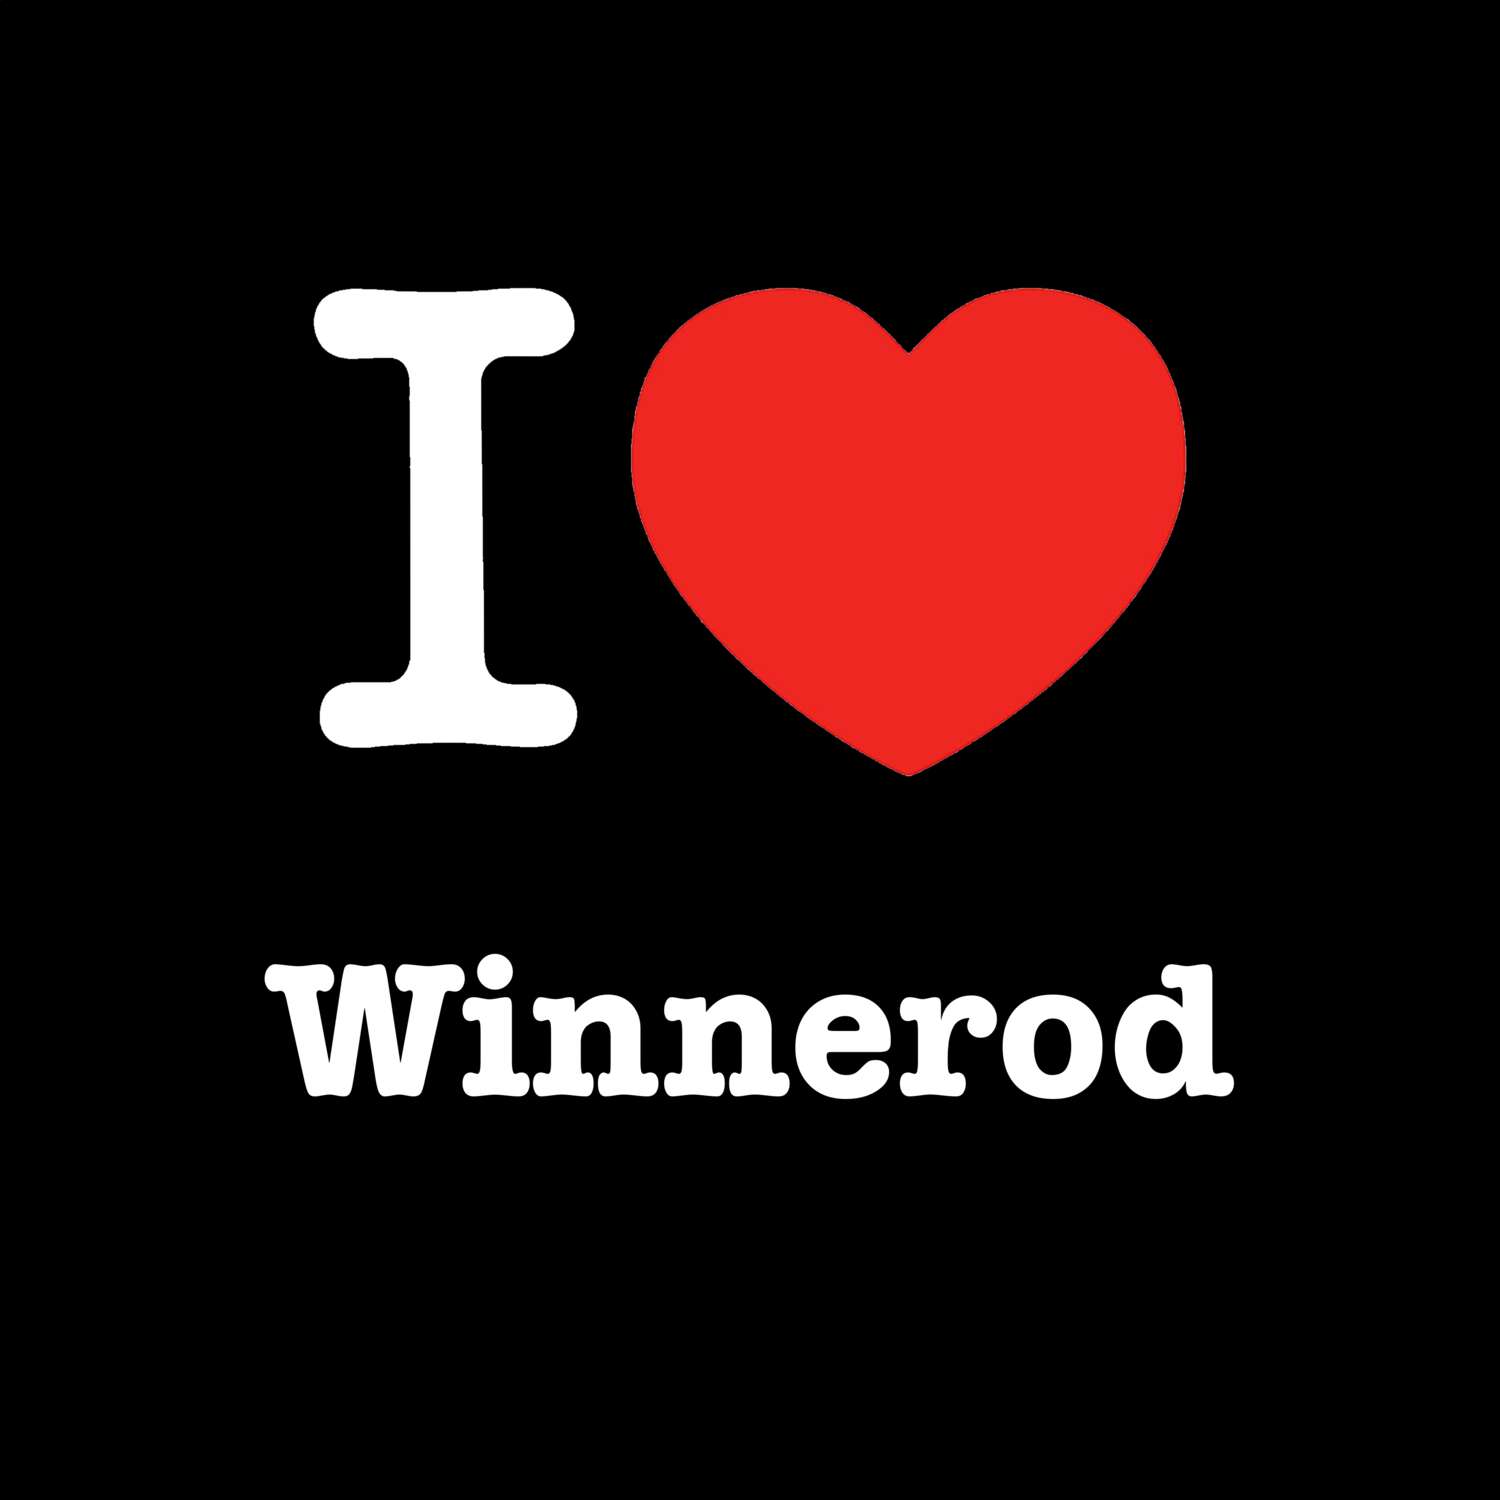 Winnerod T-Shirt »I love«